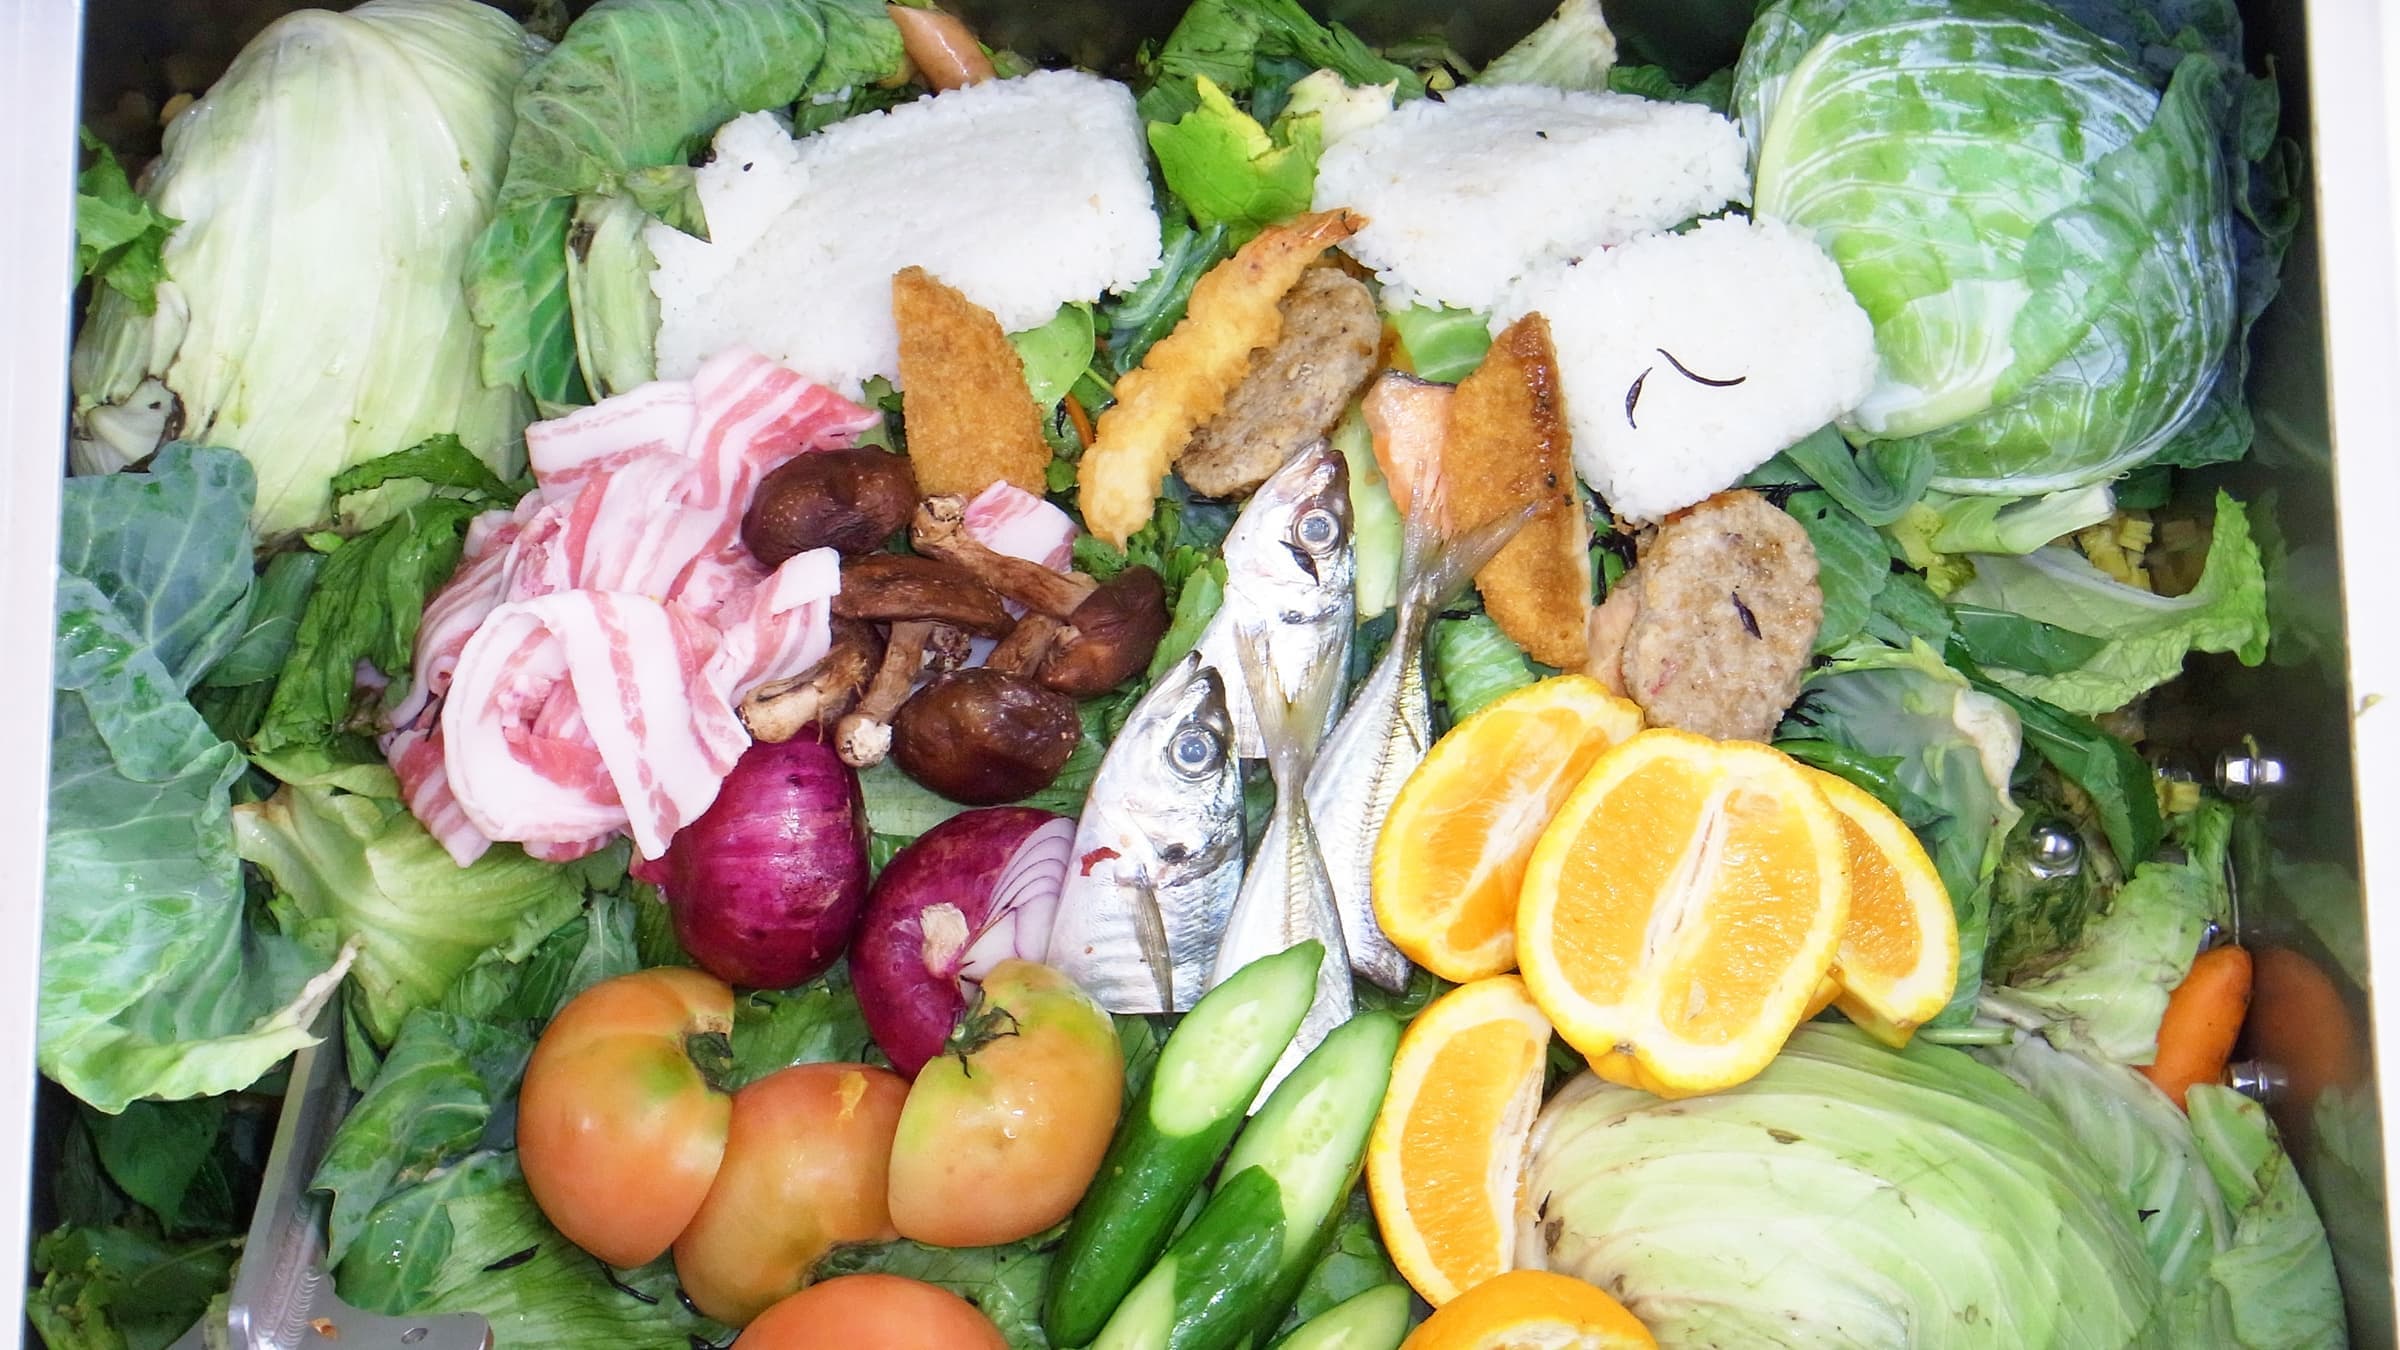 業務用生ゴミ処理機ゴミマジックは肉も野菜も分解して水に還します